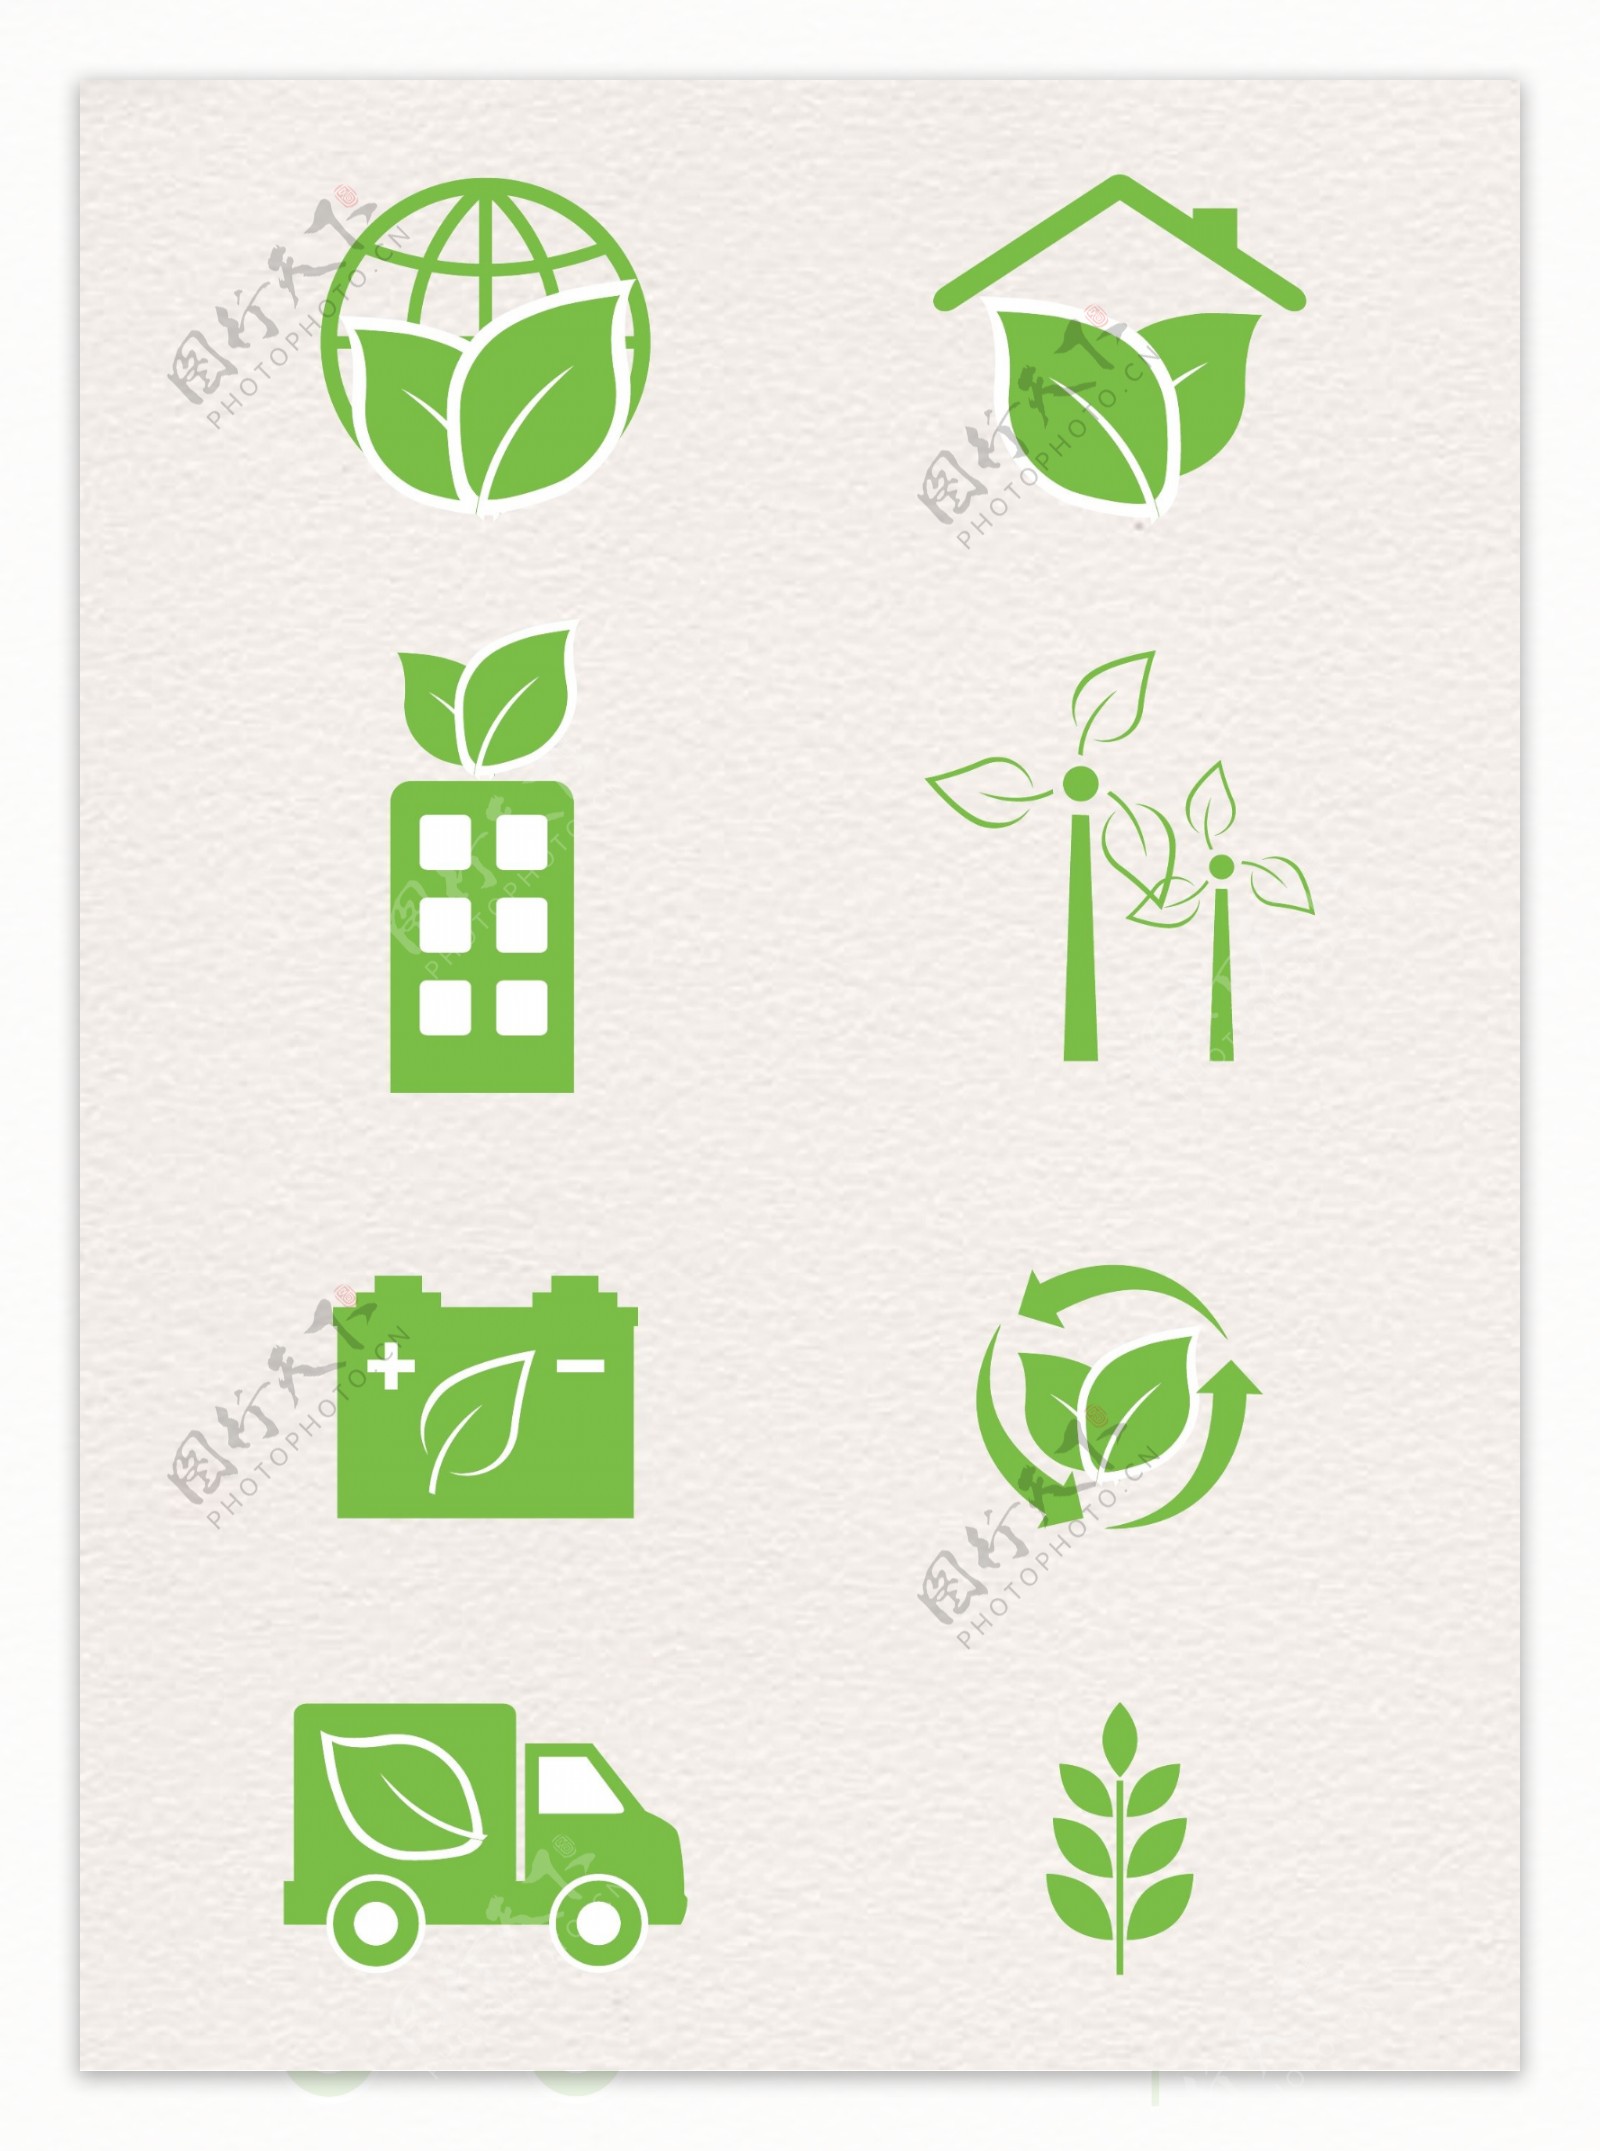 简约绿色环保图标设计矢量素材